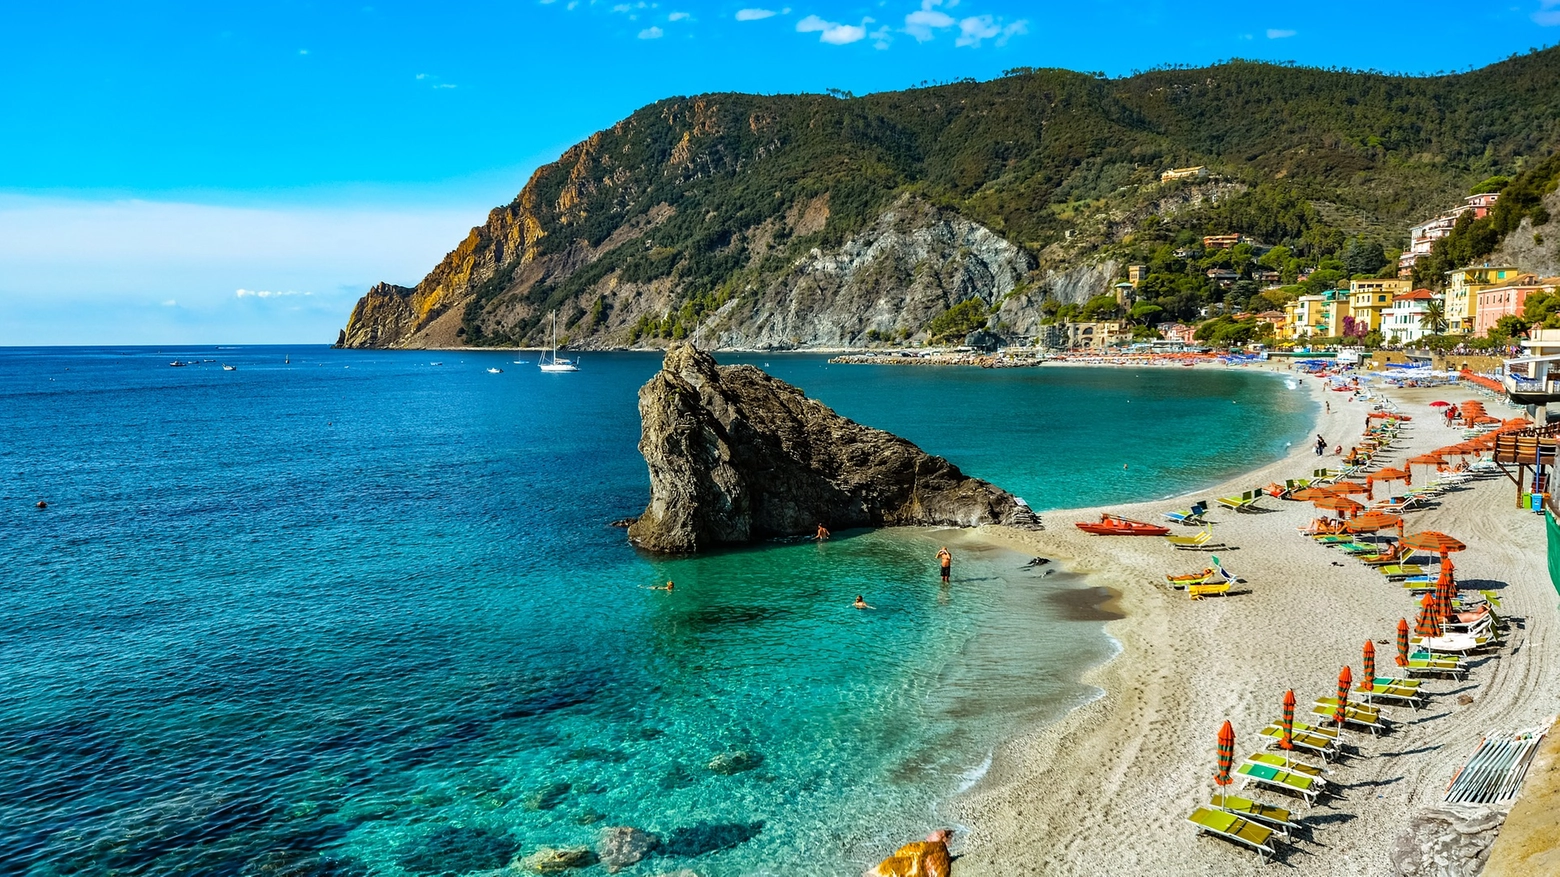 La località delle Cinque Terre è quinta nella graduatoria europea, dove figura anche la spiaggia di Sansone sull’isola d'Elba, al nono posto. Nella superclassifica anche località di Calabria, Emilia-Romagna, Campania, Sicilia, Sardegna e Puglia